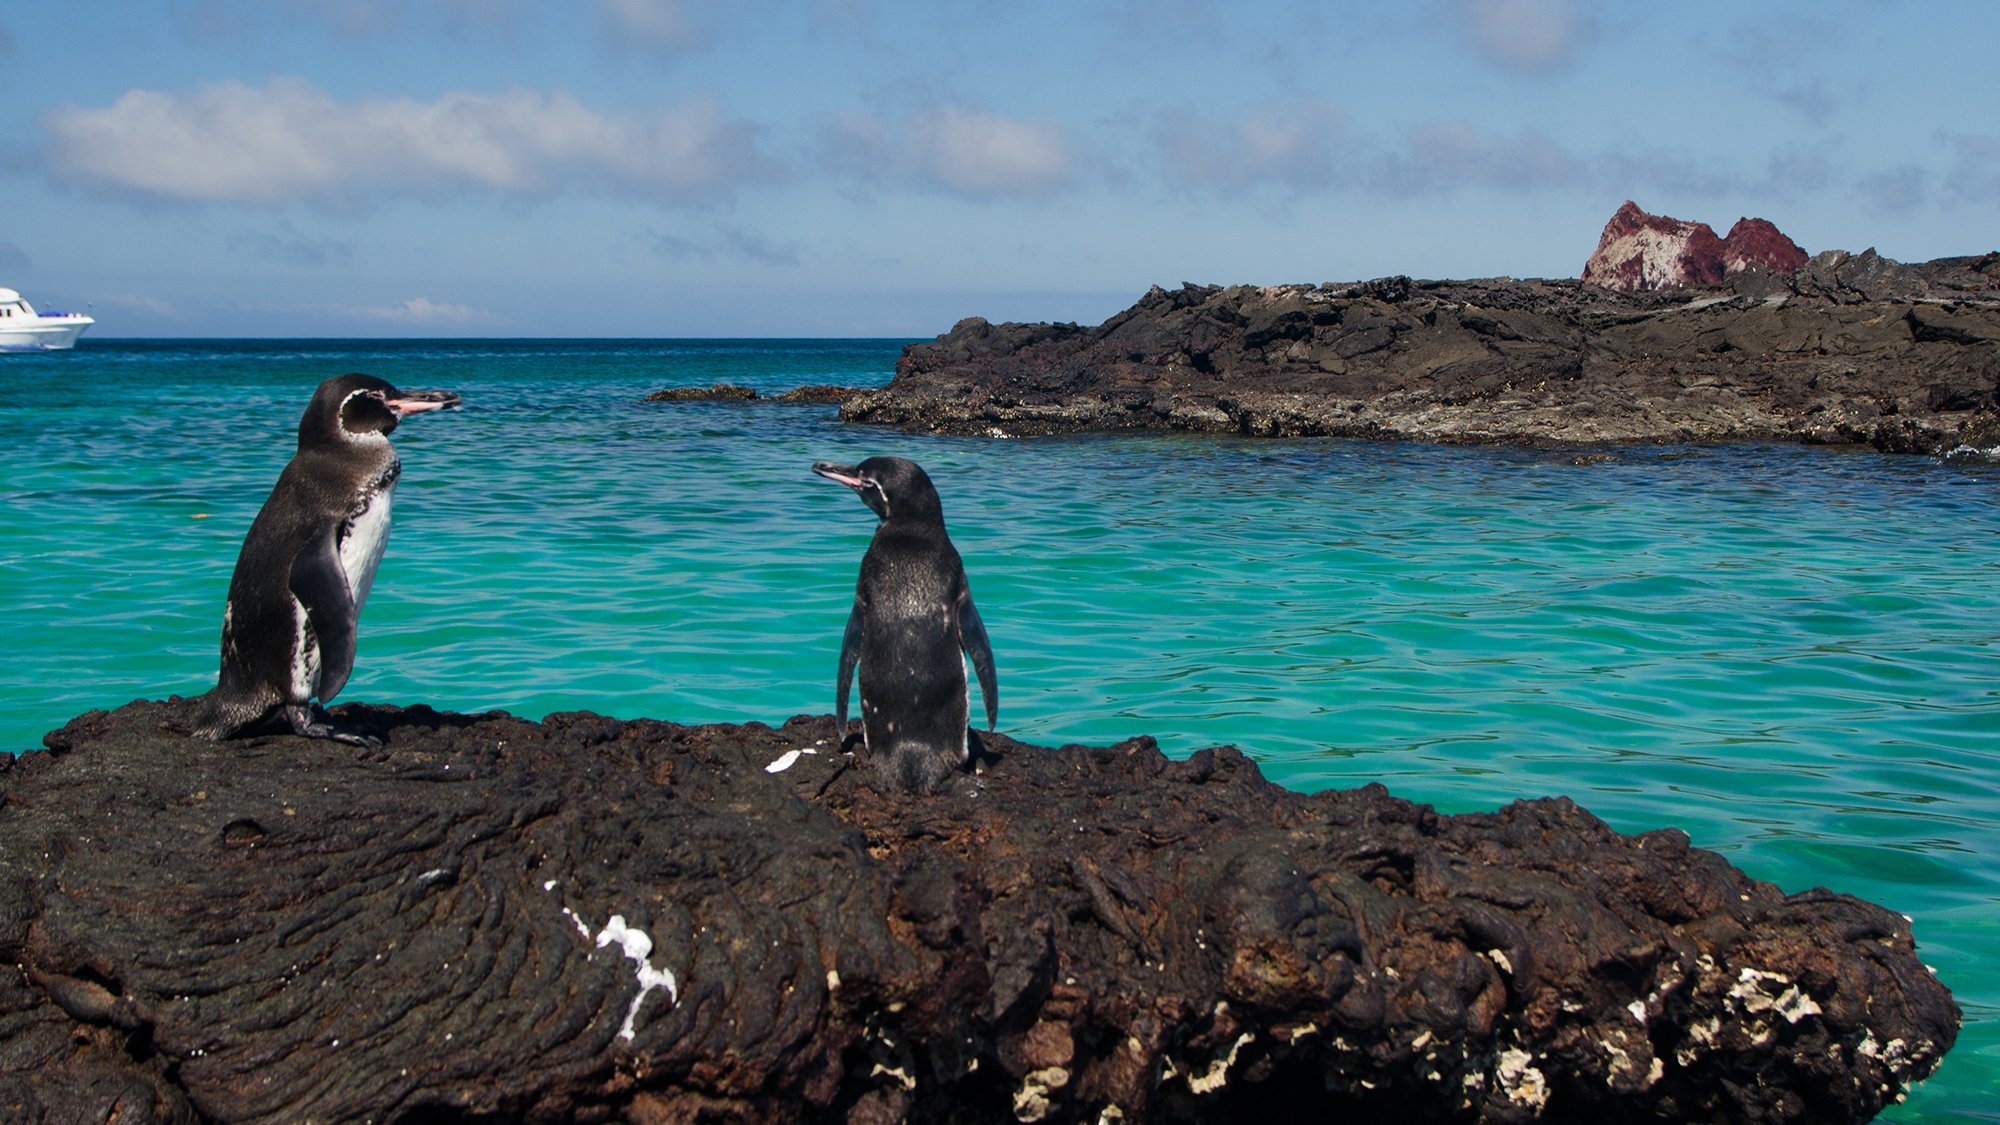 Galapagos penguins rock meet water